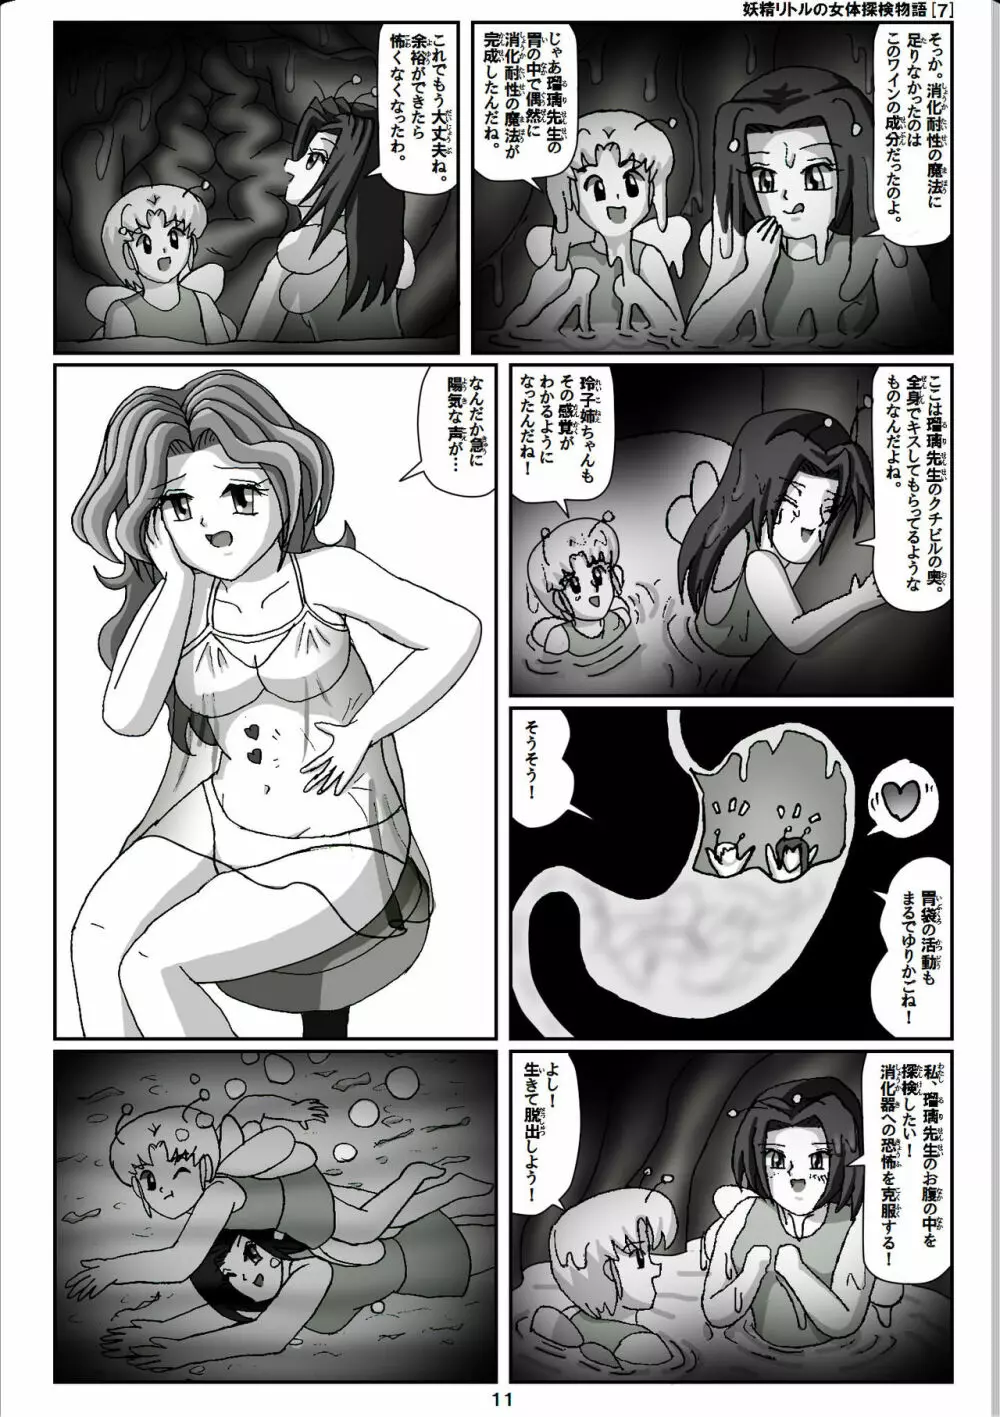 妖精リトルの女体探検物語 7 11ページ